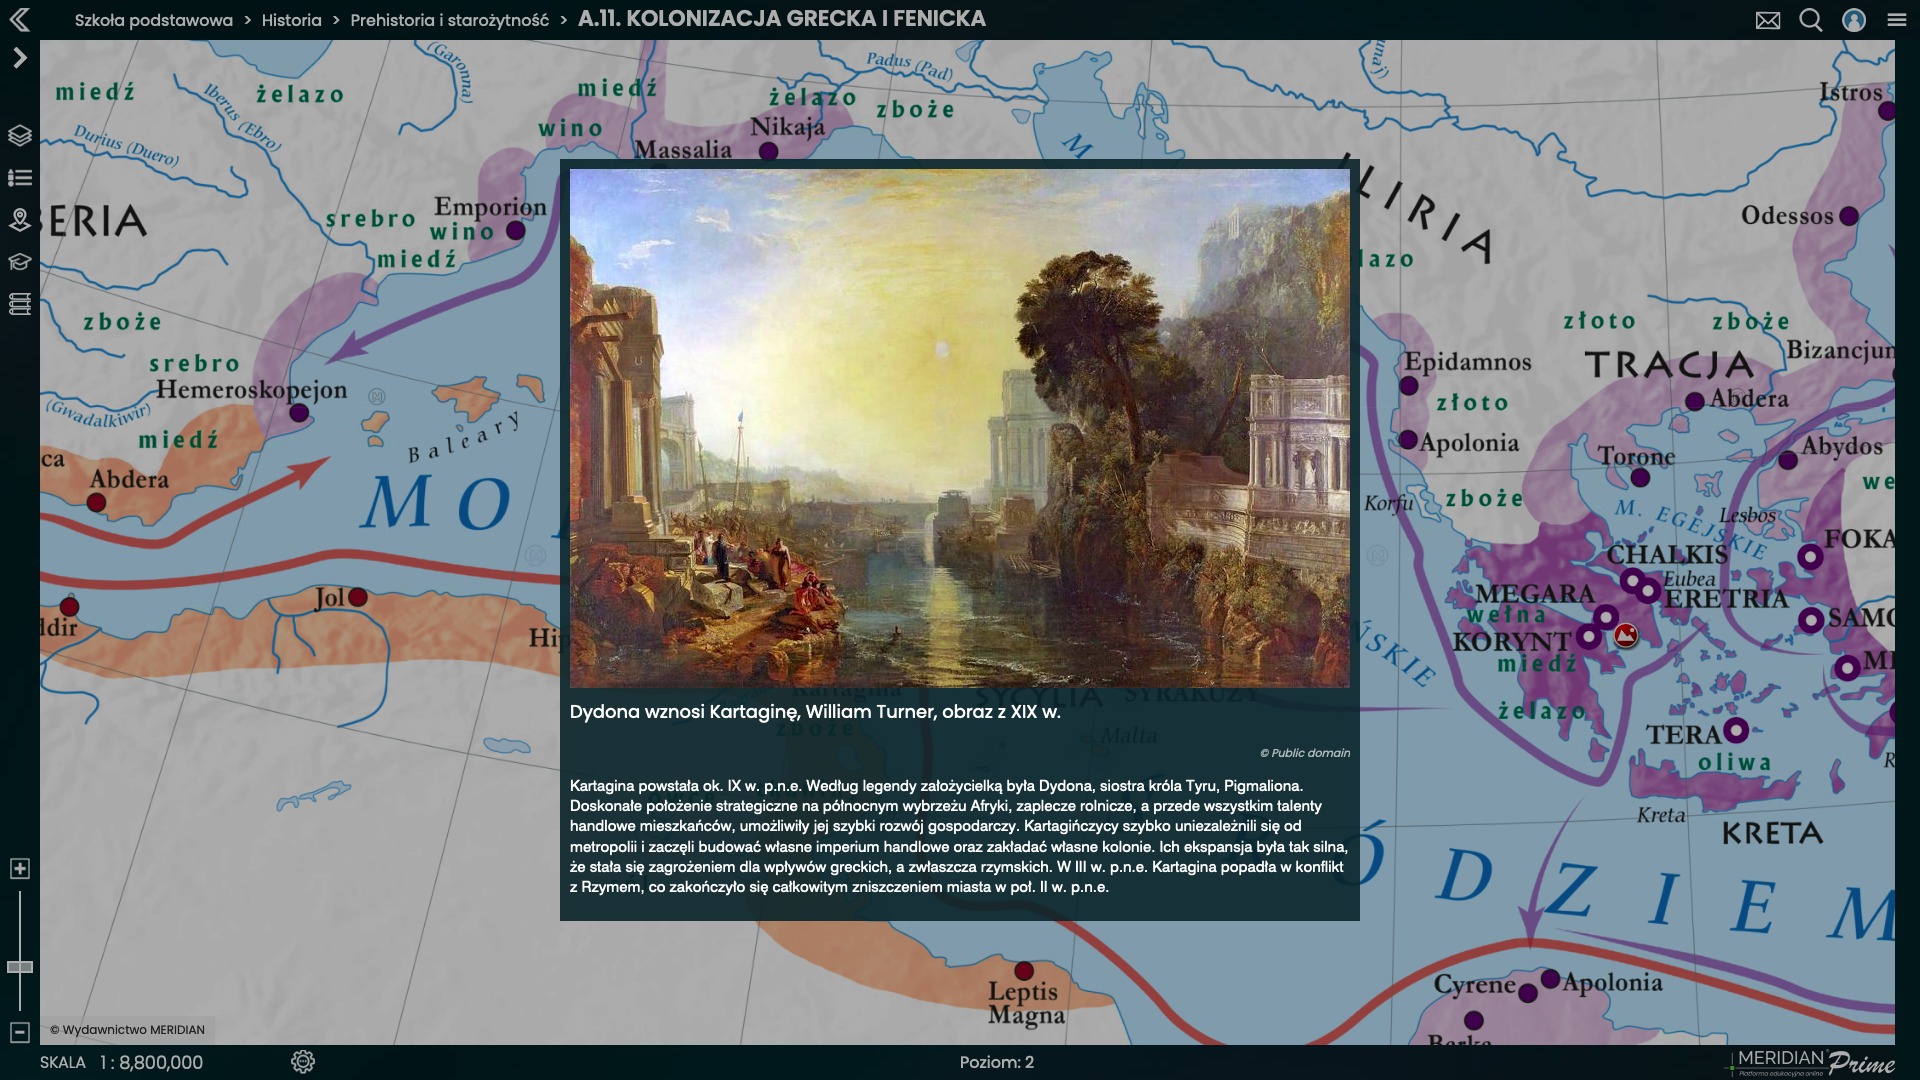 Kolonizacja grecka i fenicka interactive